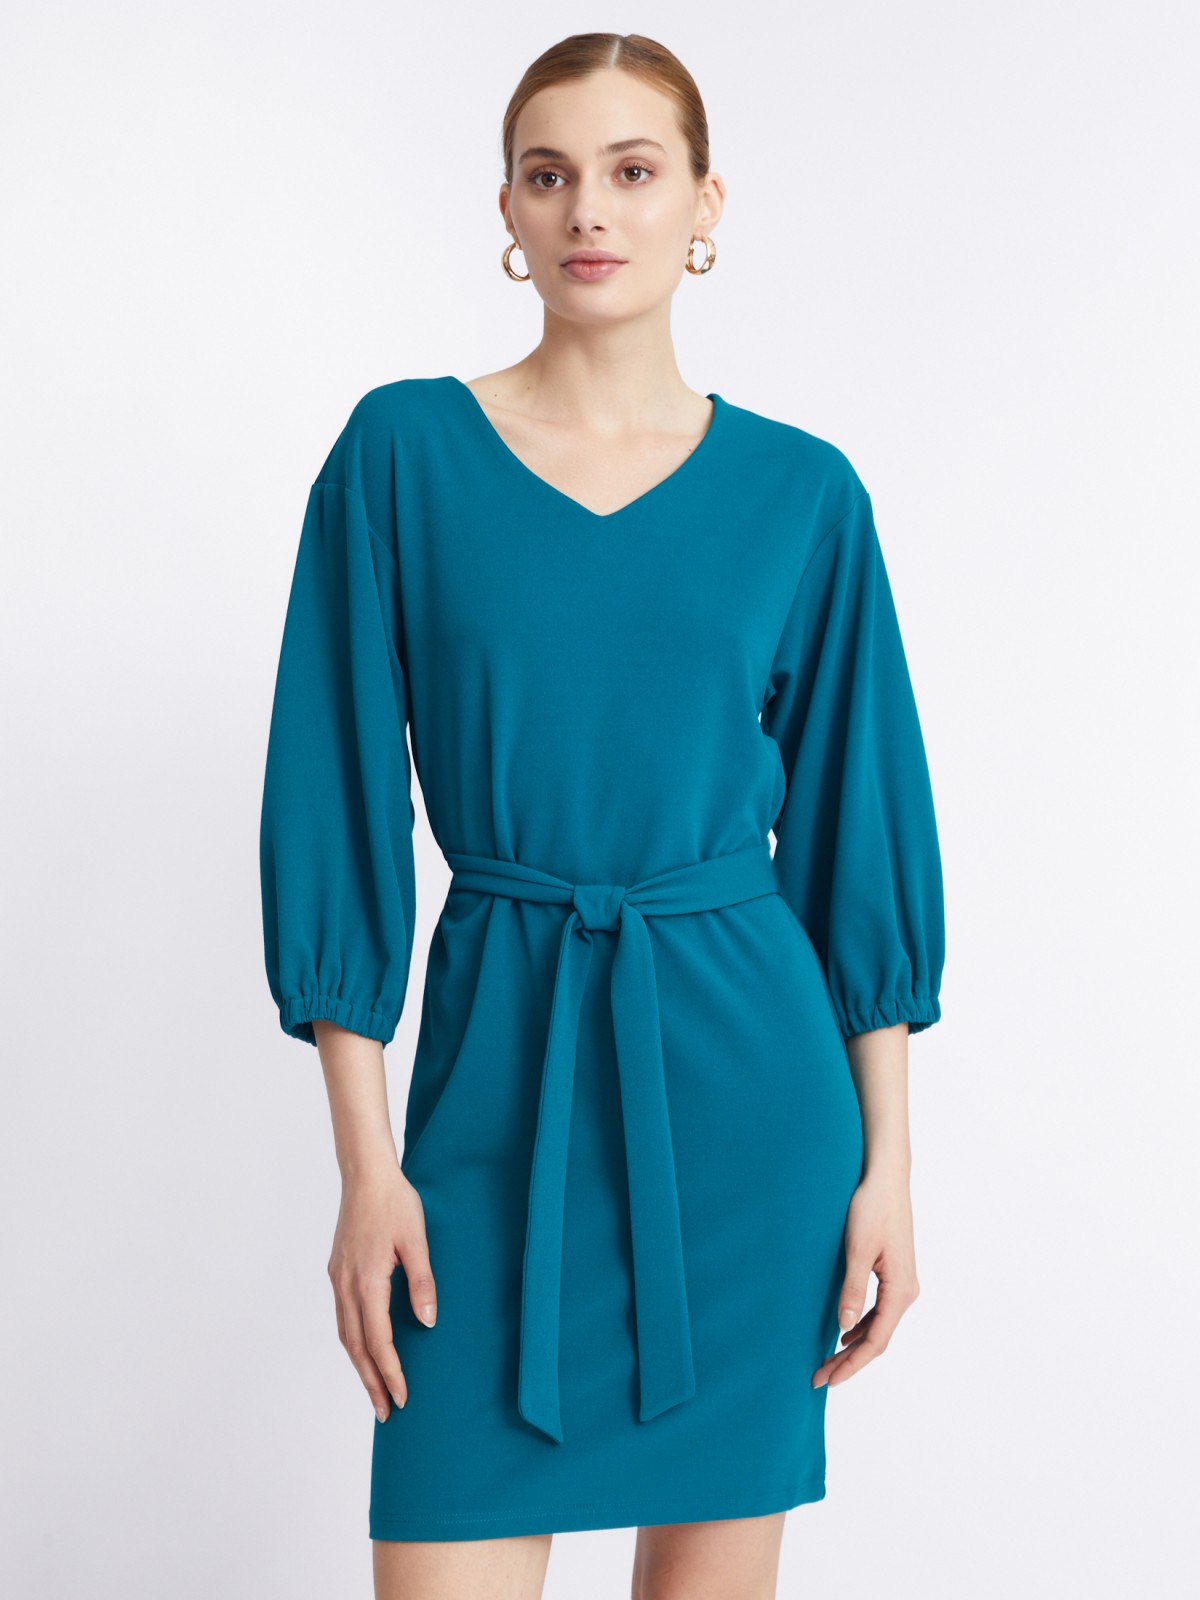 Платье с объёмными рукавами и поясом zolla 22331819F062, цвет темно-бирюзовый, размер S